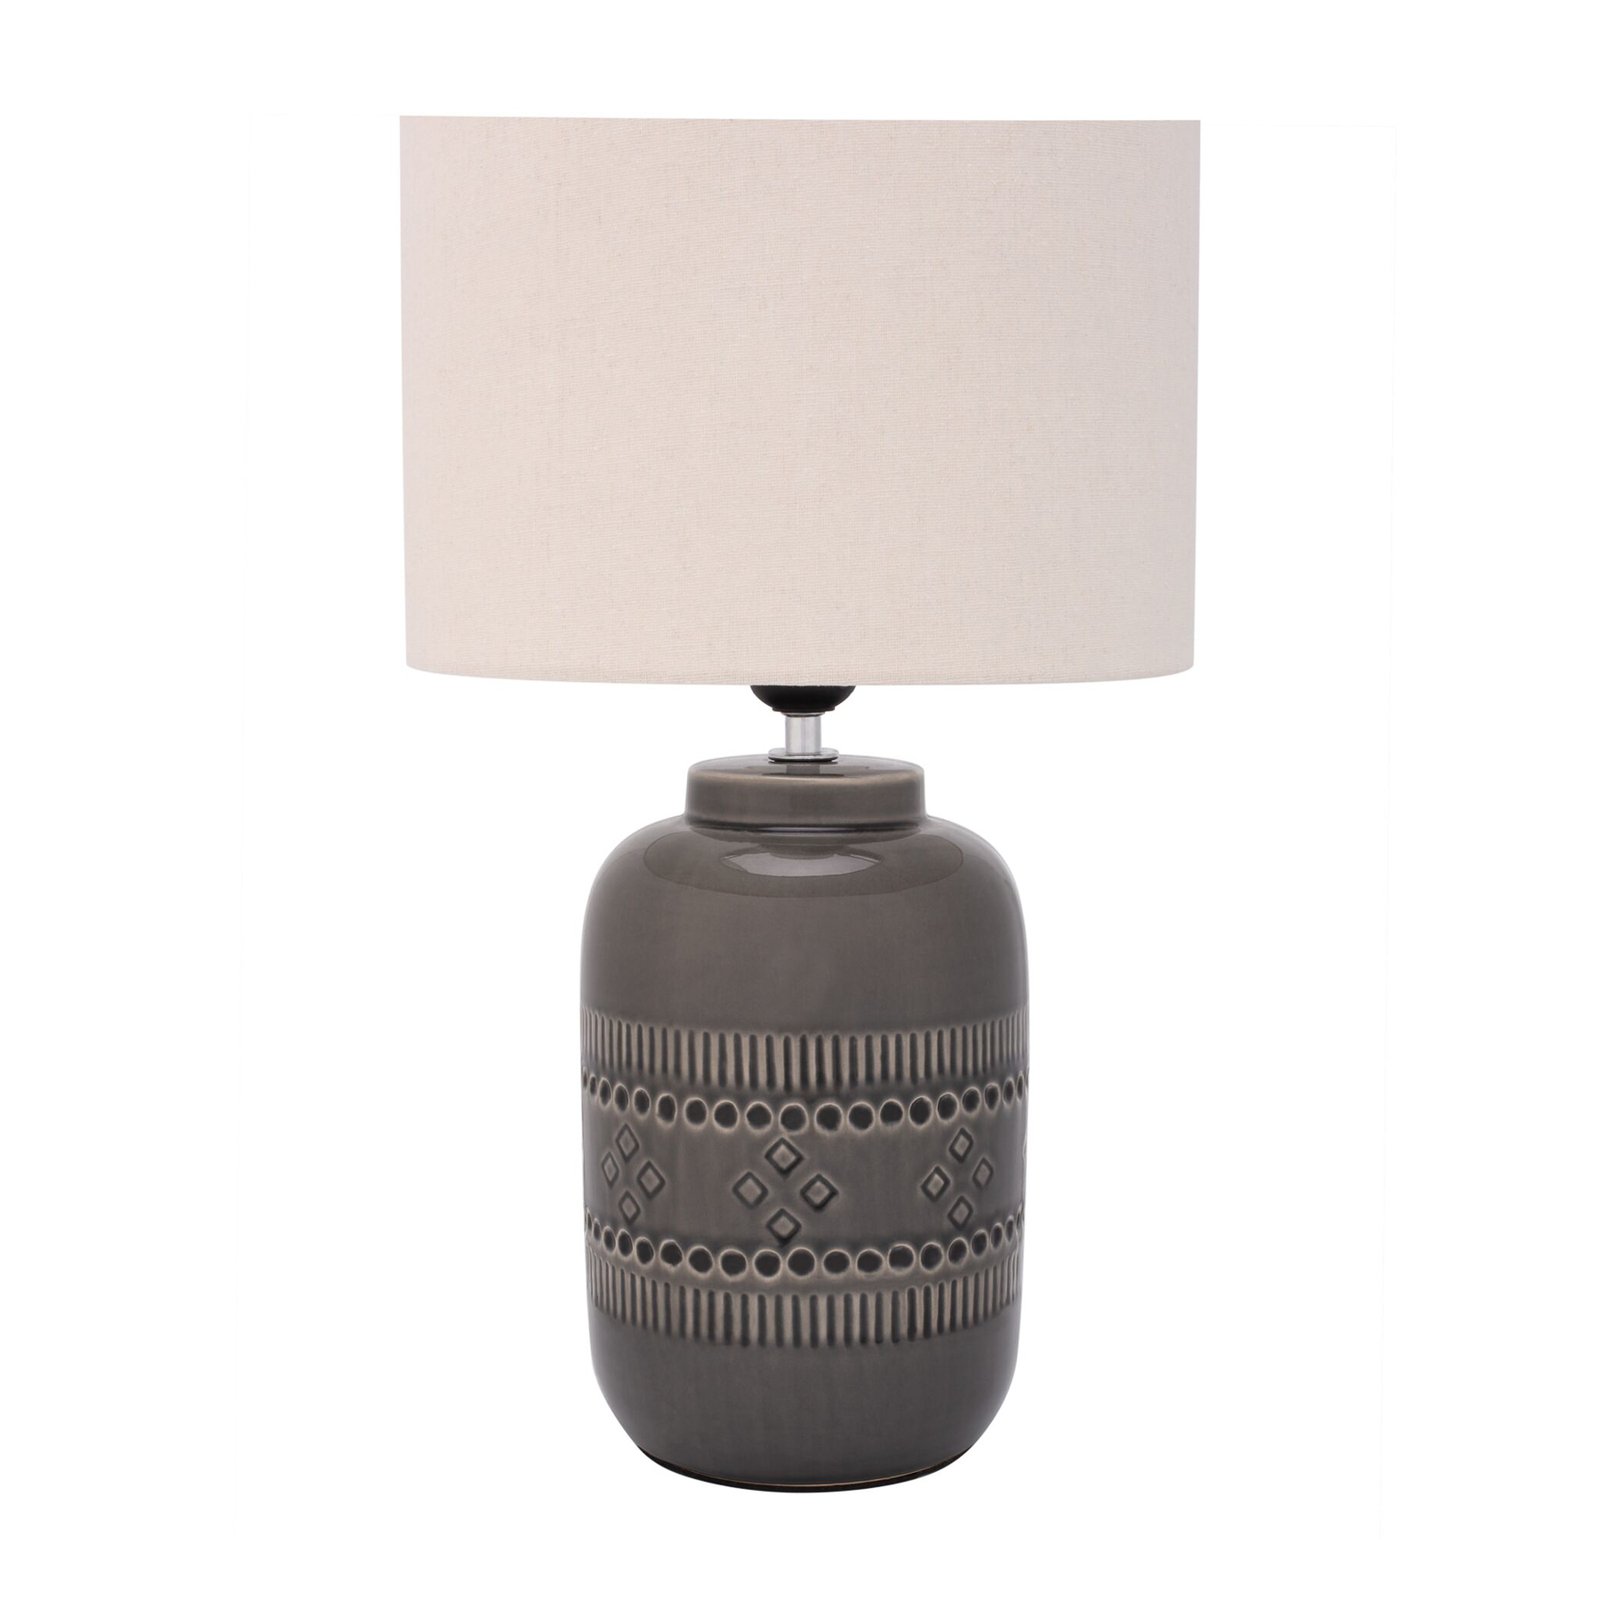 Pauleen Gleaming Beauty bordlampe med keramikfod